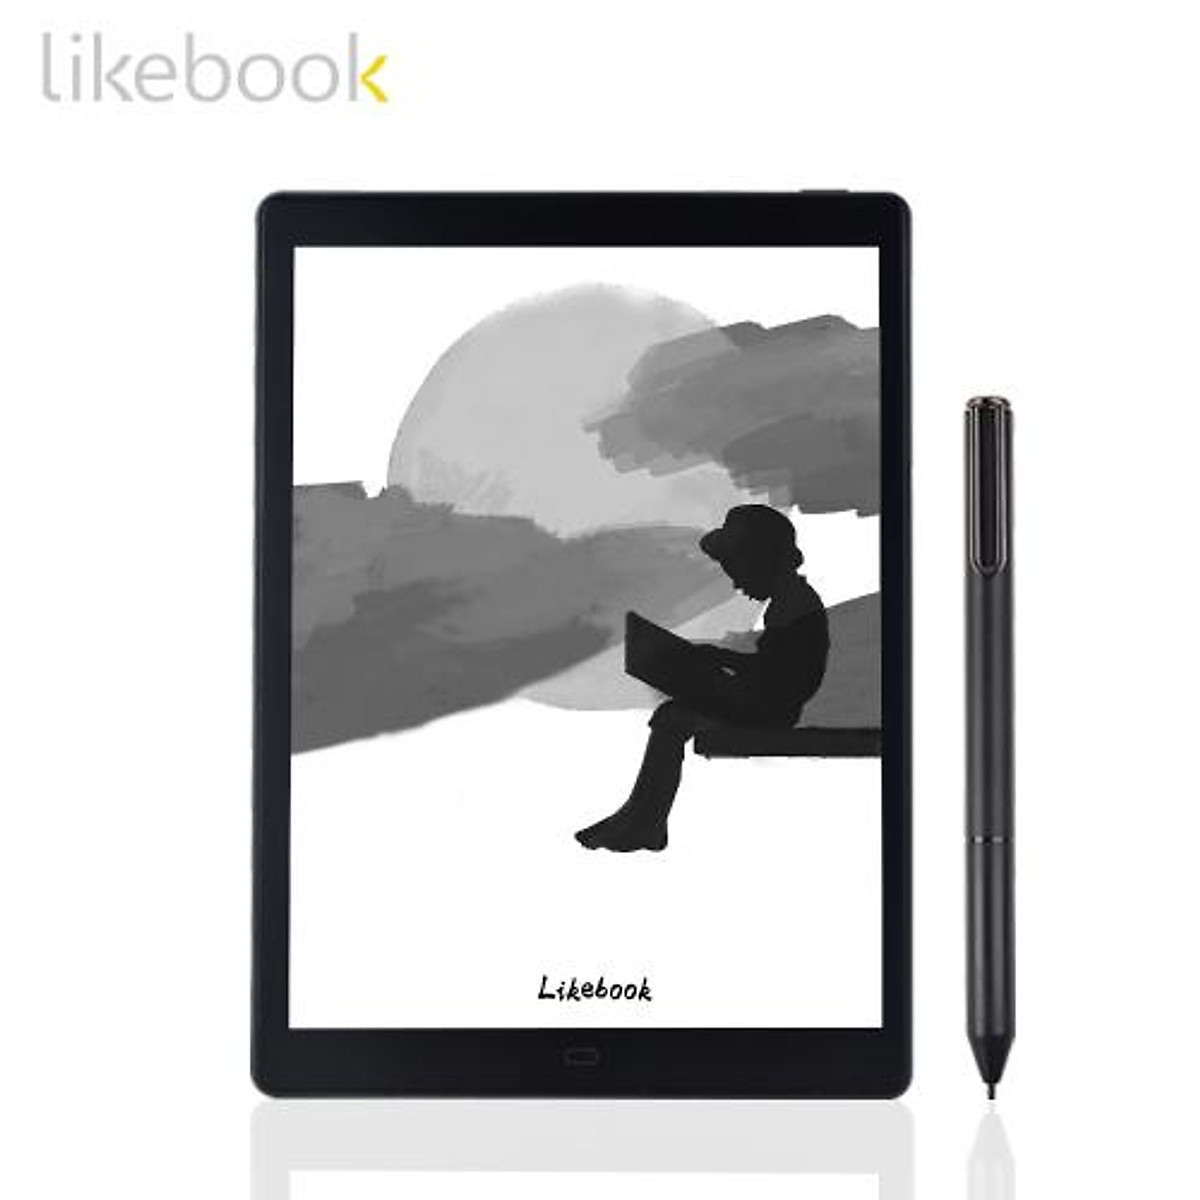 Nếu bạn muốn có một máy đọc sách đa chức năng, Likebook P10 là sự lựa chọn hoàn hảo cho bạn. Không chỉ giúp bạn đọc sách, máy còn có thể nghe nhạc và truy cập mạng xã hội một cách tiện lợi